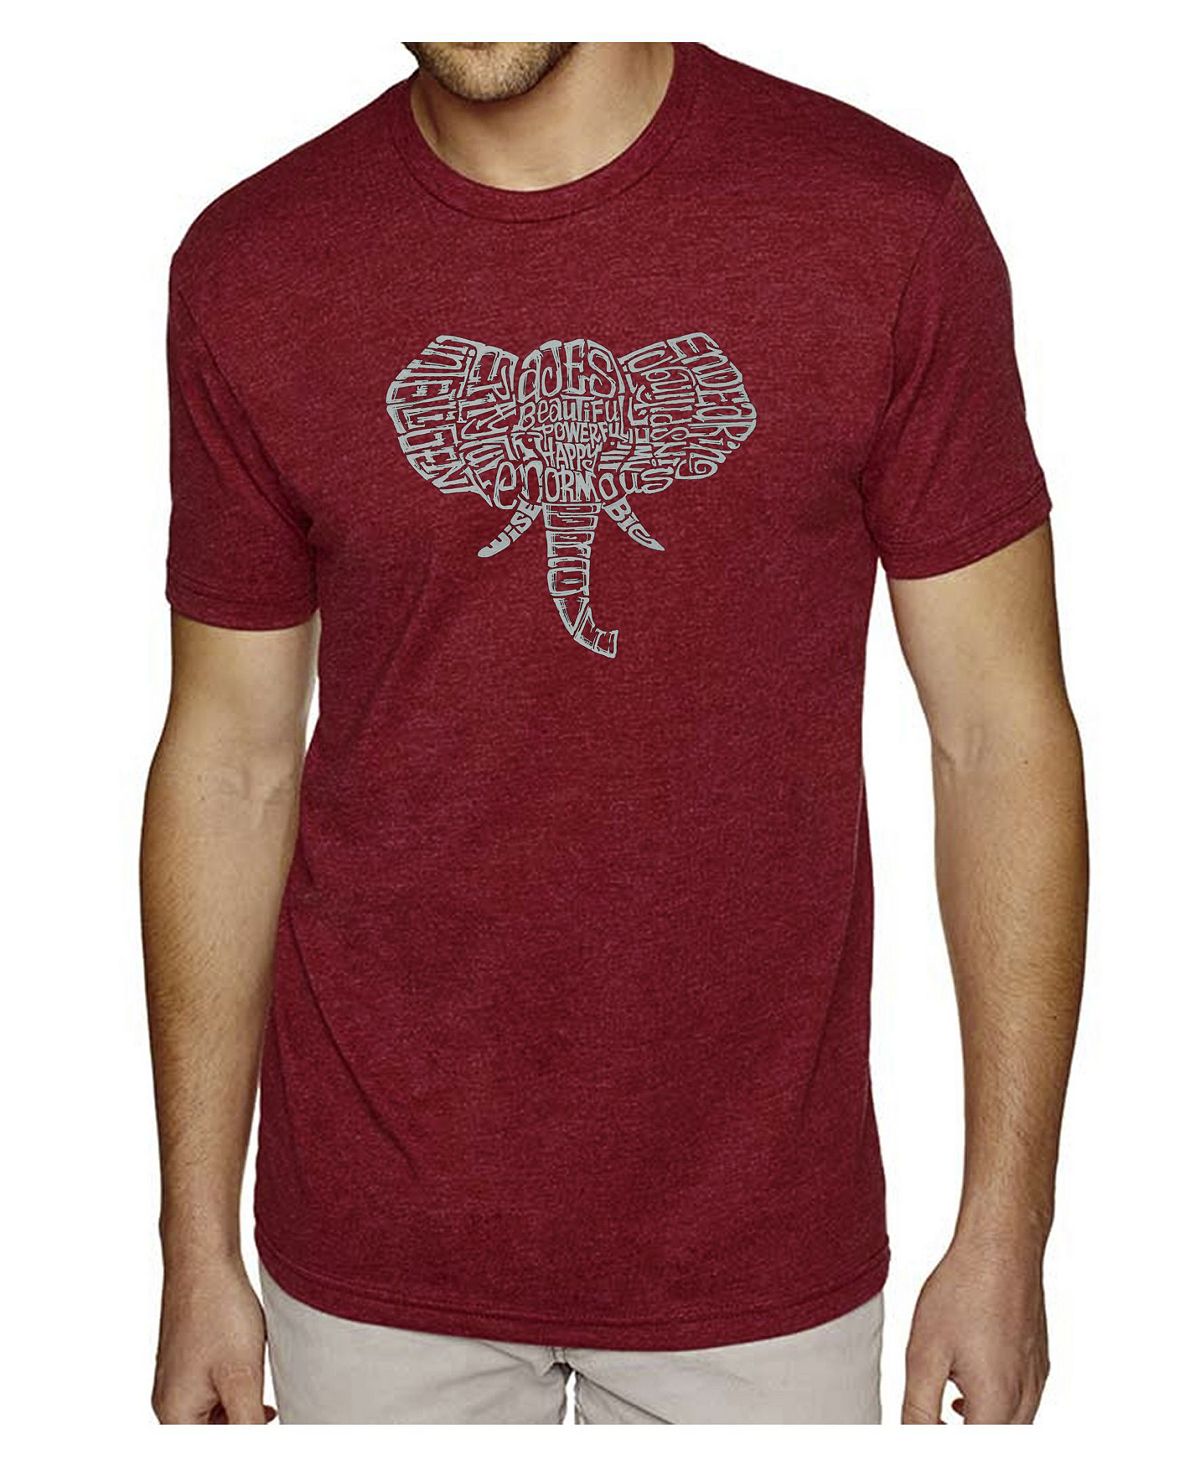 Мужская футболка premium blend word art - бивни слона LA Pop Art цена и фото